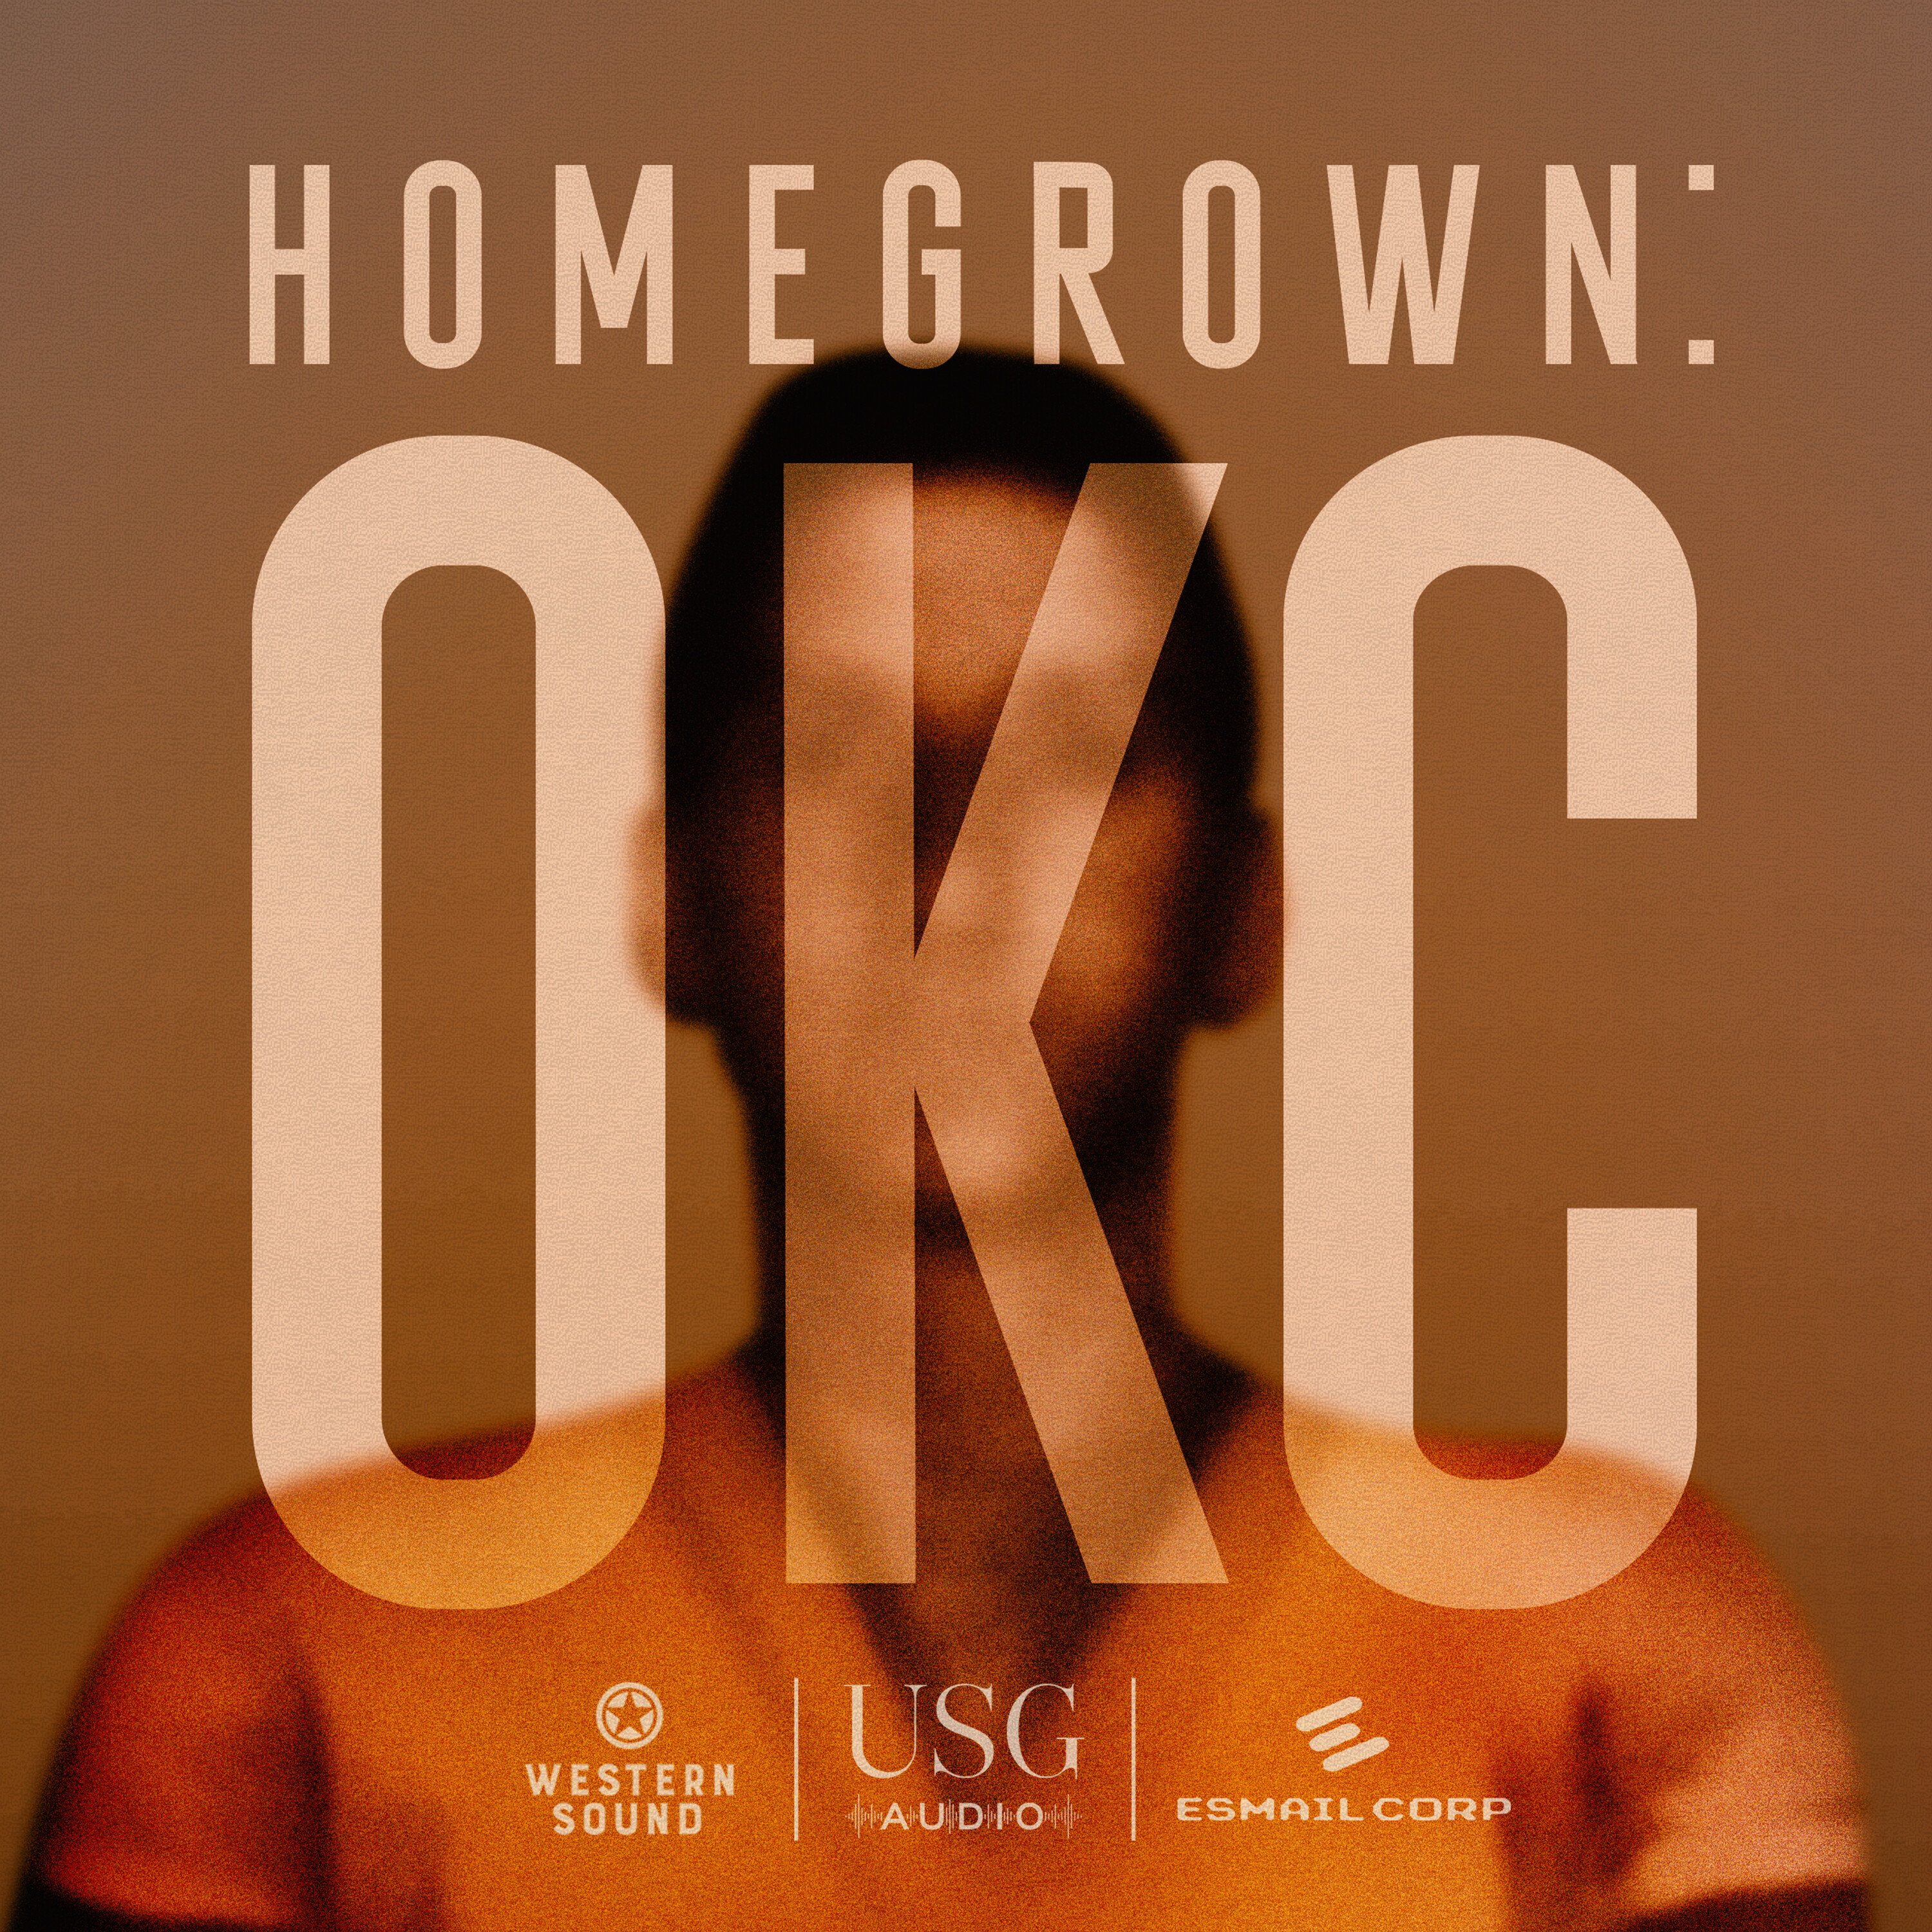 Homegrown: OKC